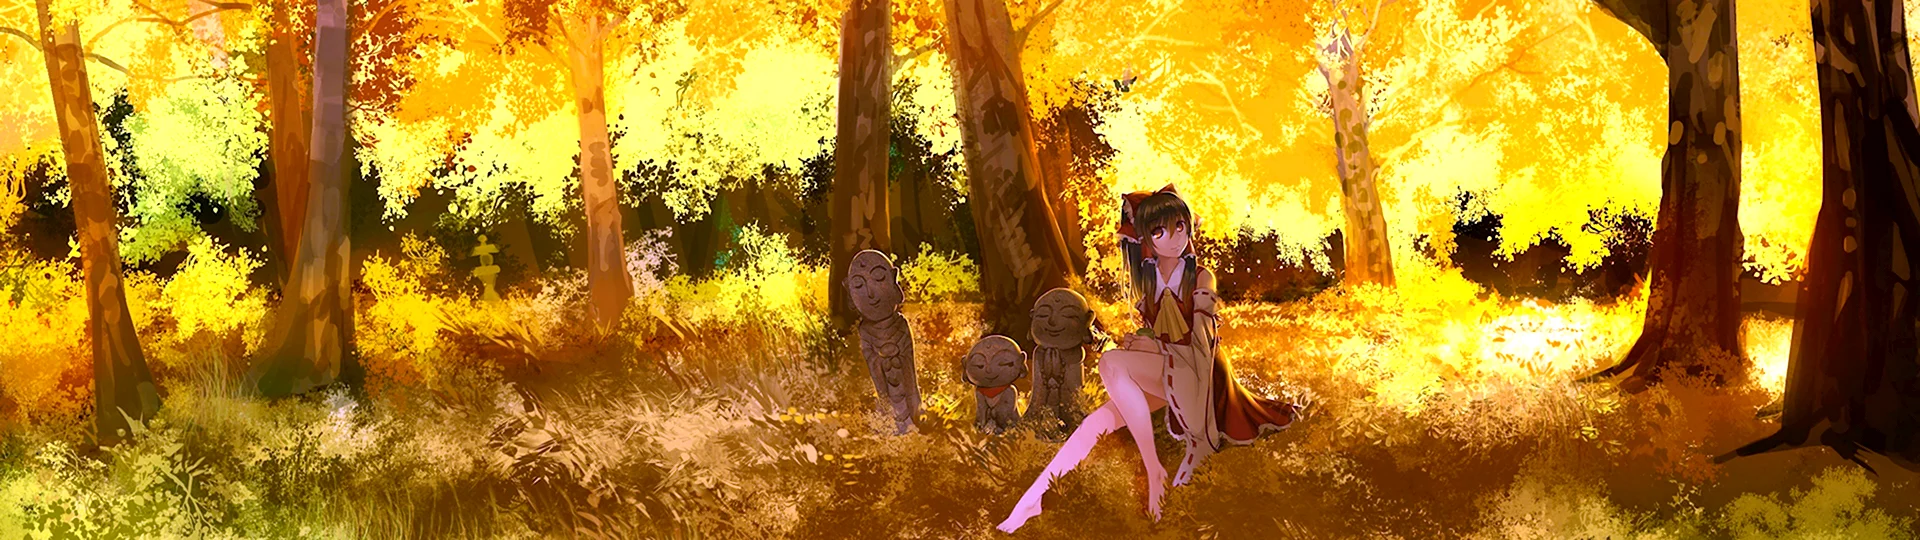 Девушка в осеннем лесу аниме